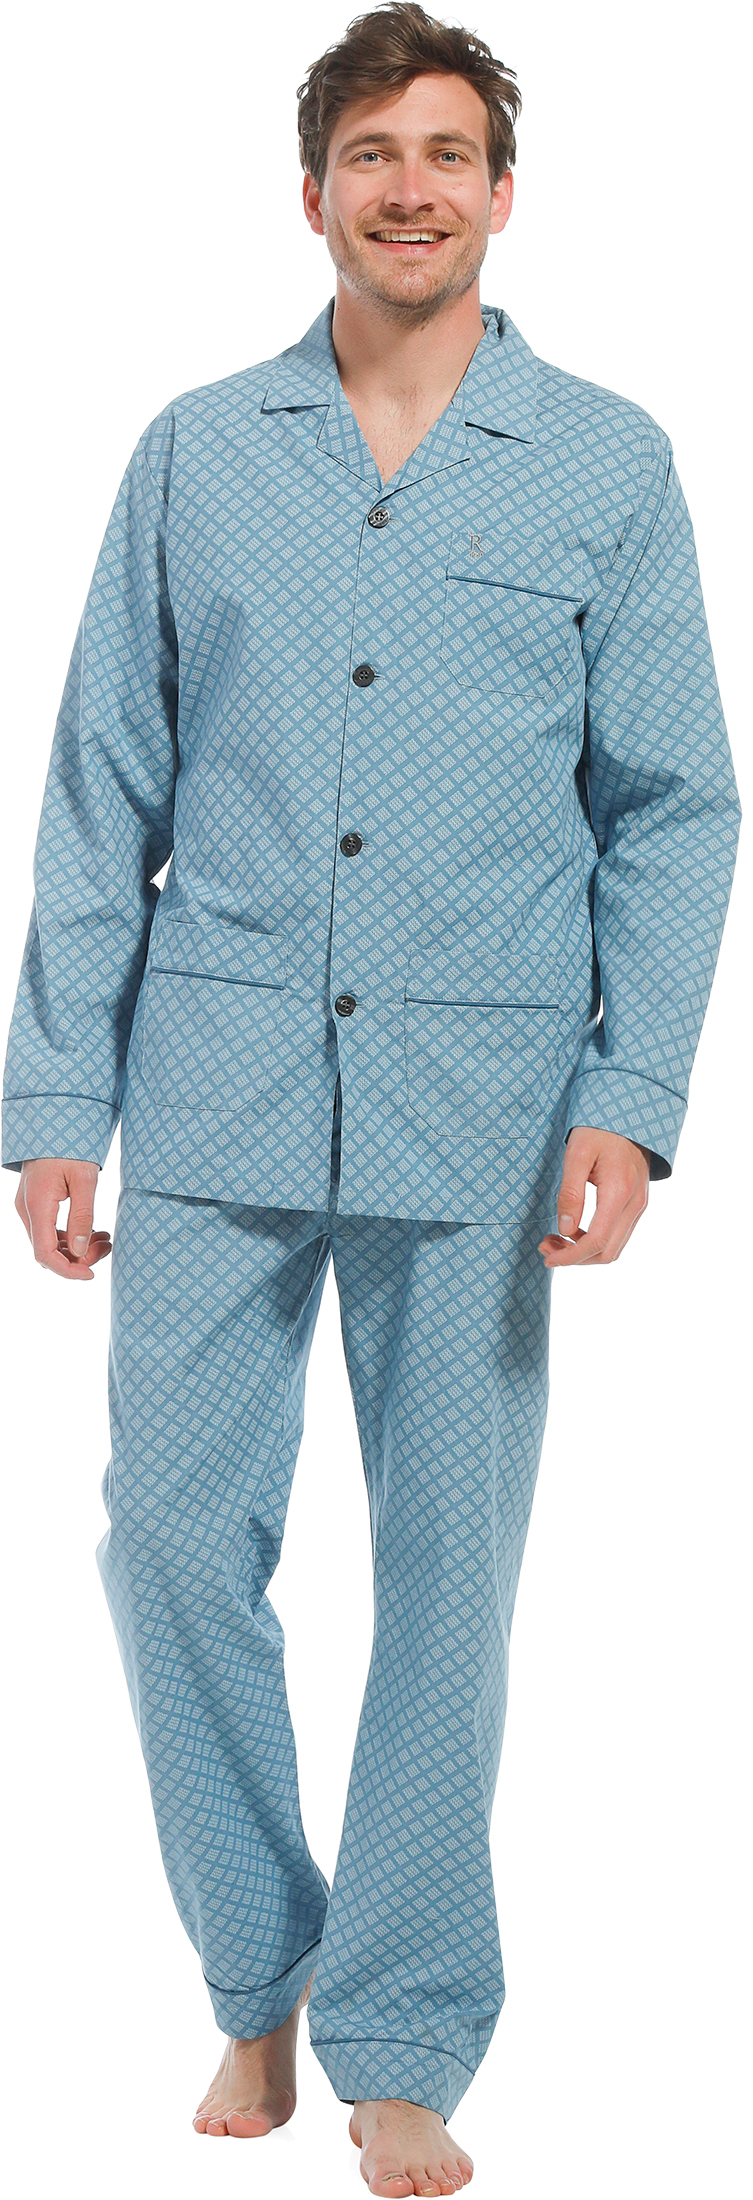 Robson heren pyjama doorknoop 27221-702-6 - Turquoise - 3XL/58